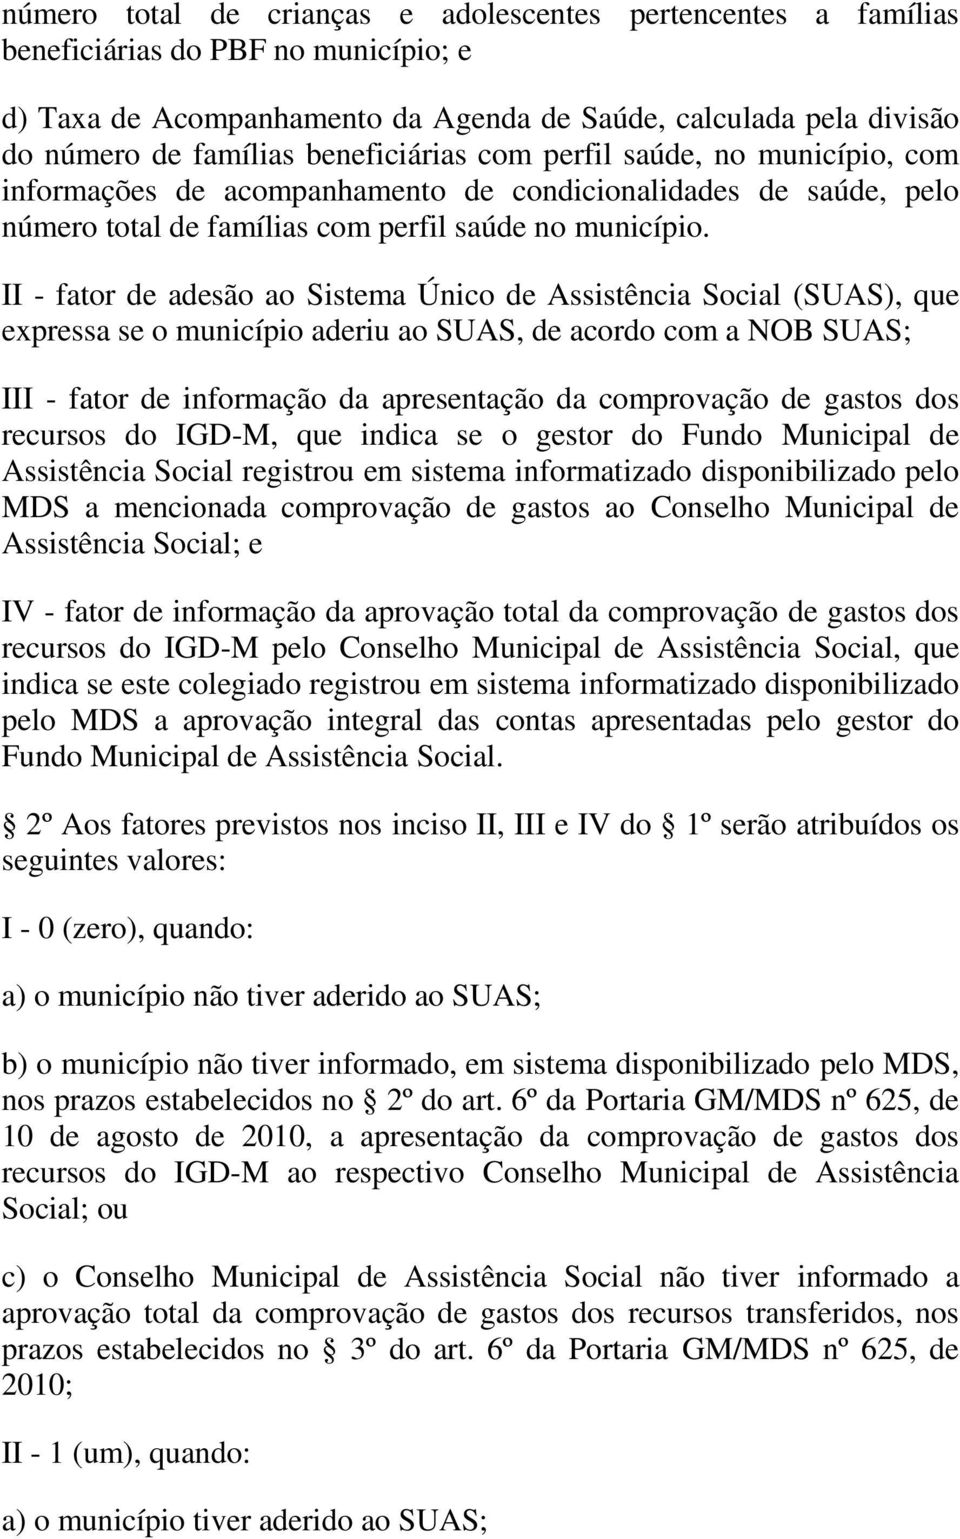 II - fator de adesão ao Sistema Único de Assistência Social (SUAS), que expressa se o município aderiu ao SUAS, de acordo com a NOB SUAS; III - fator de informação da apresentação da comprovação de